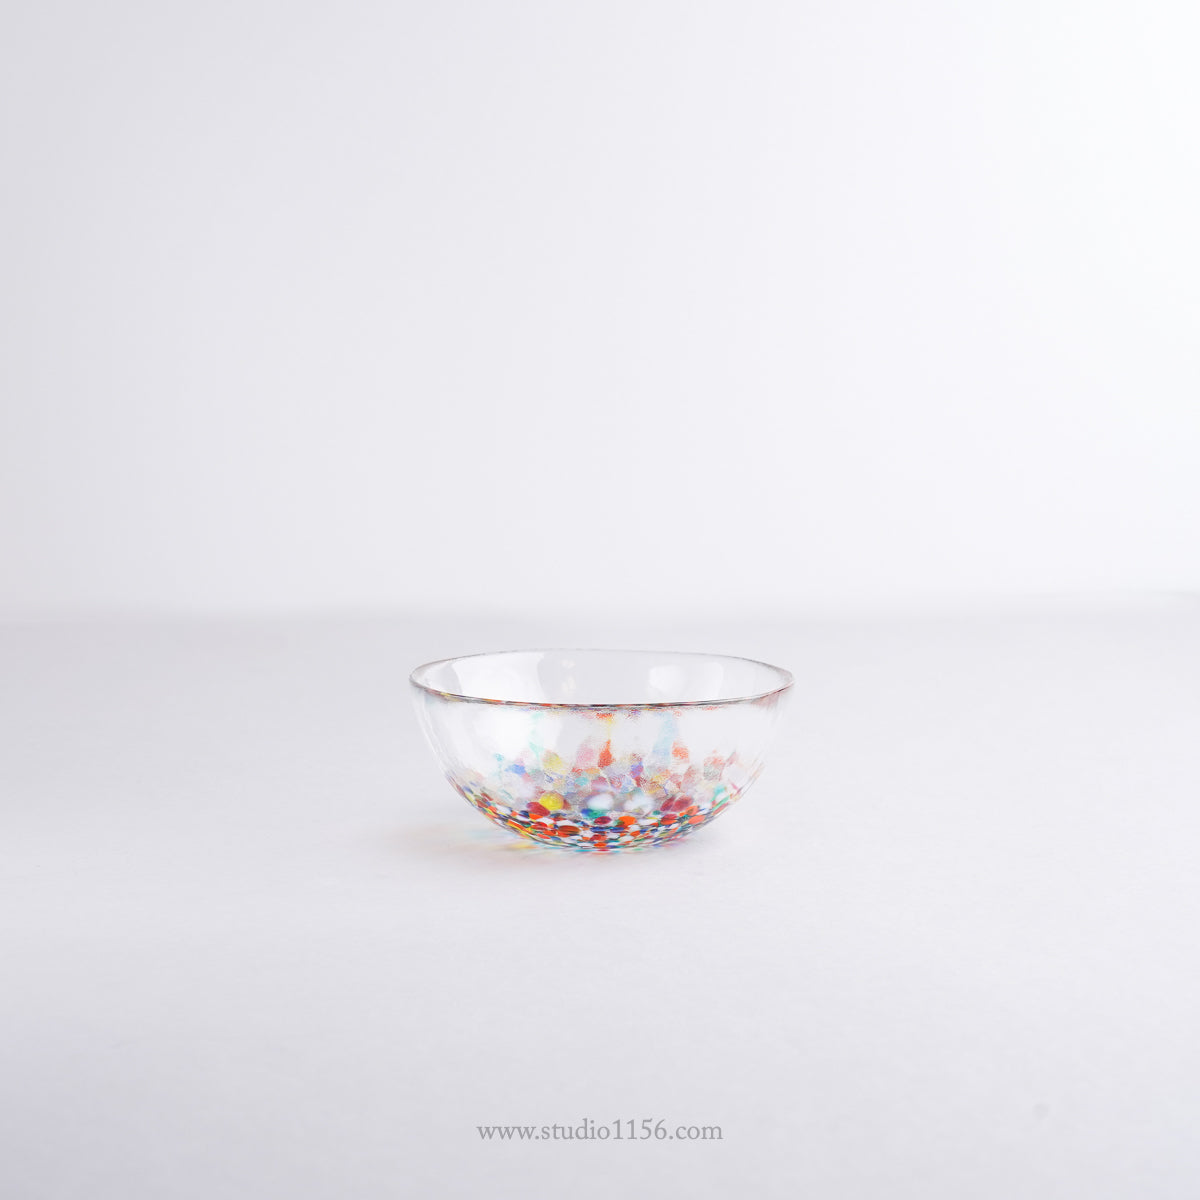 硝子食器 津軽びいどろ ねぶた小鉢 12cm Tsugaru-Vidro Studio1156